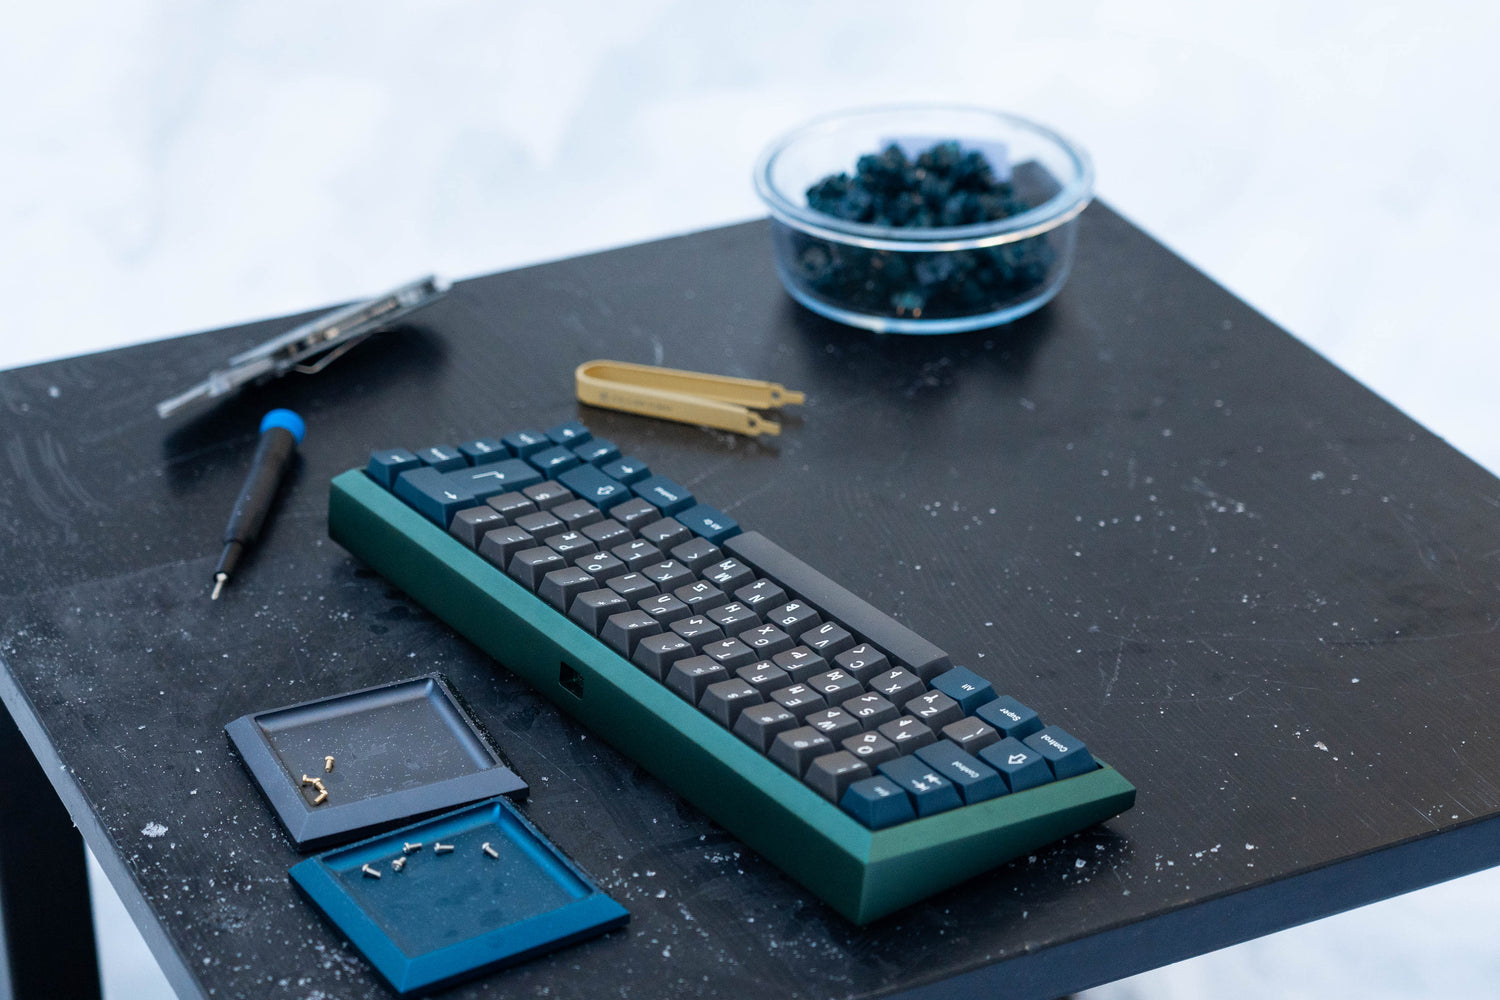 Le Cairn Mesa  Key : le clavier mécanique fabriqué en France par Cairn  Devices — KissKissBankBank